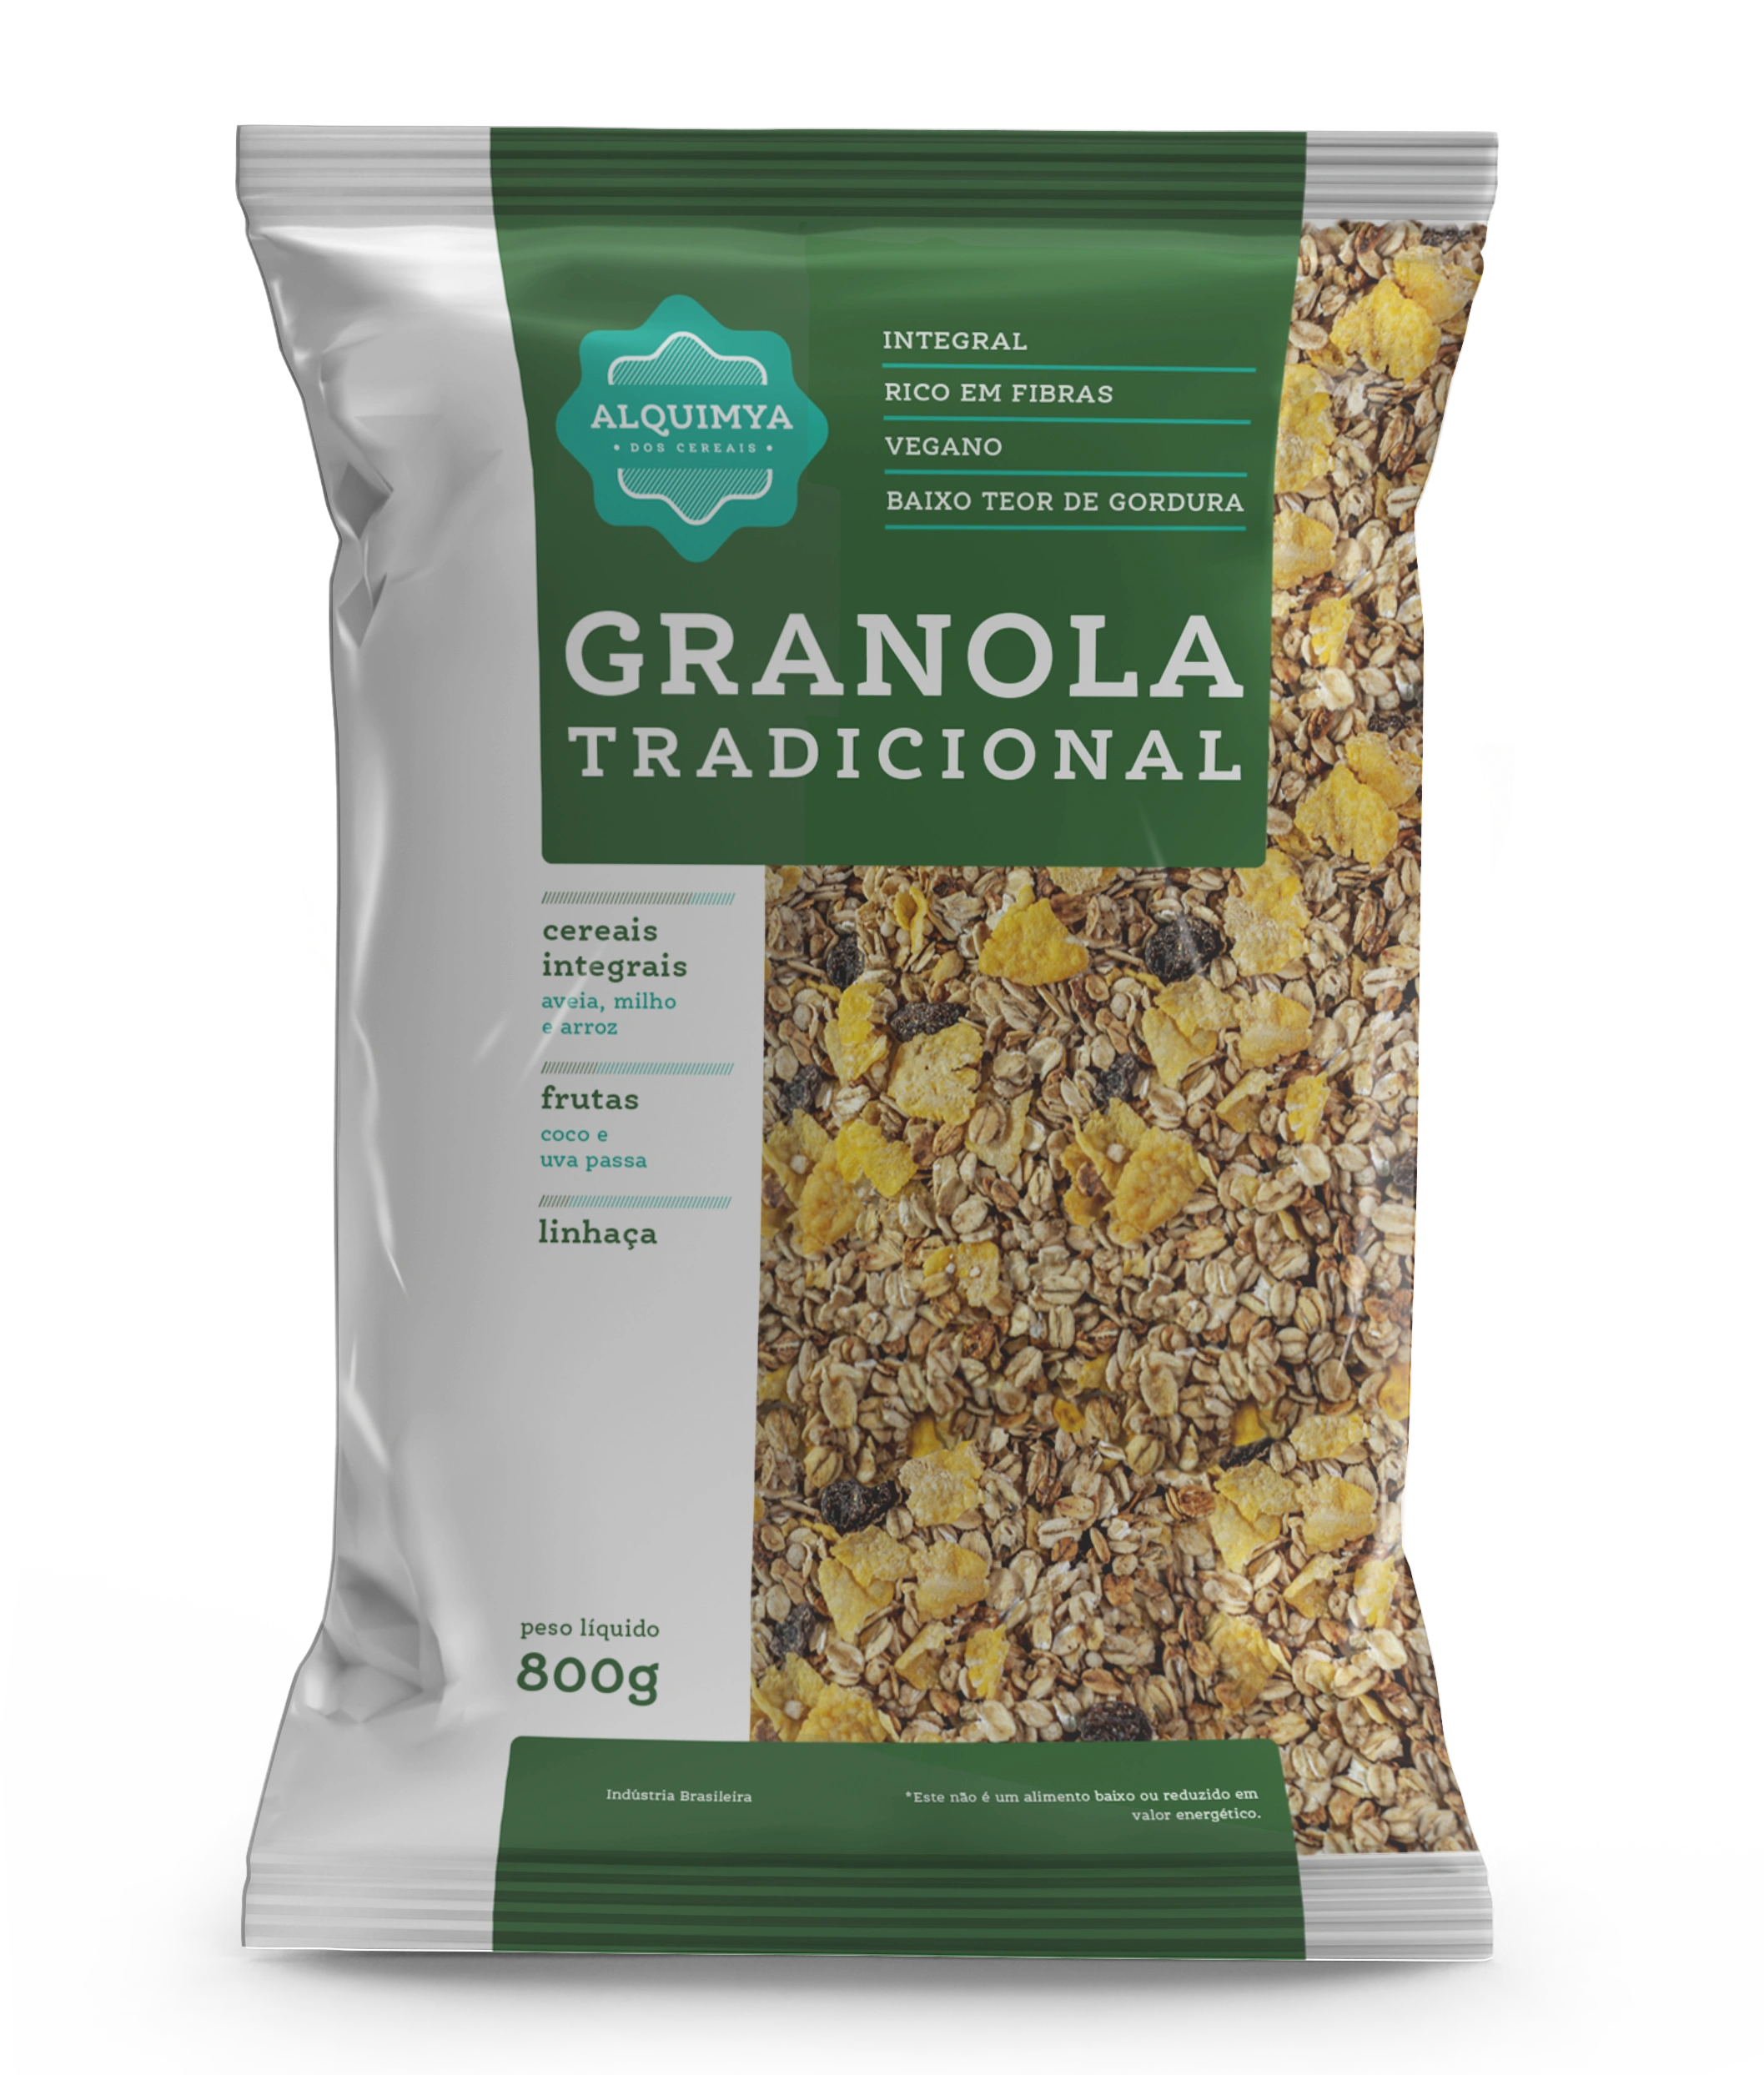 Granola Tradicional - Alquimya dos Cereais